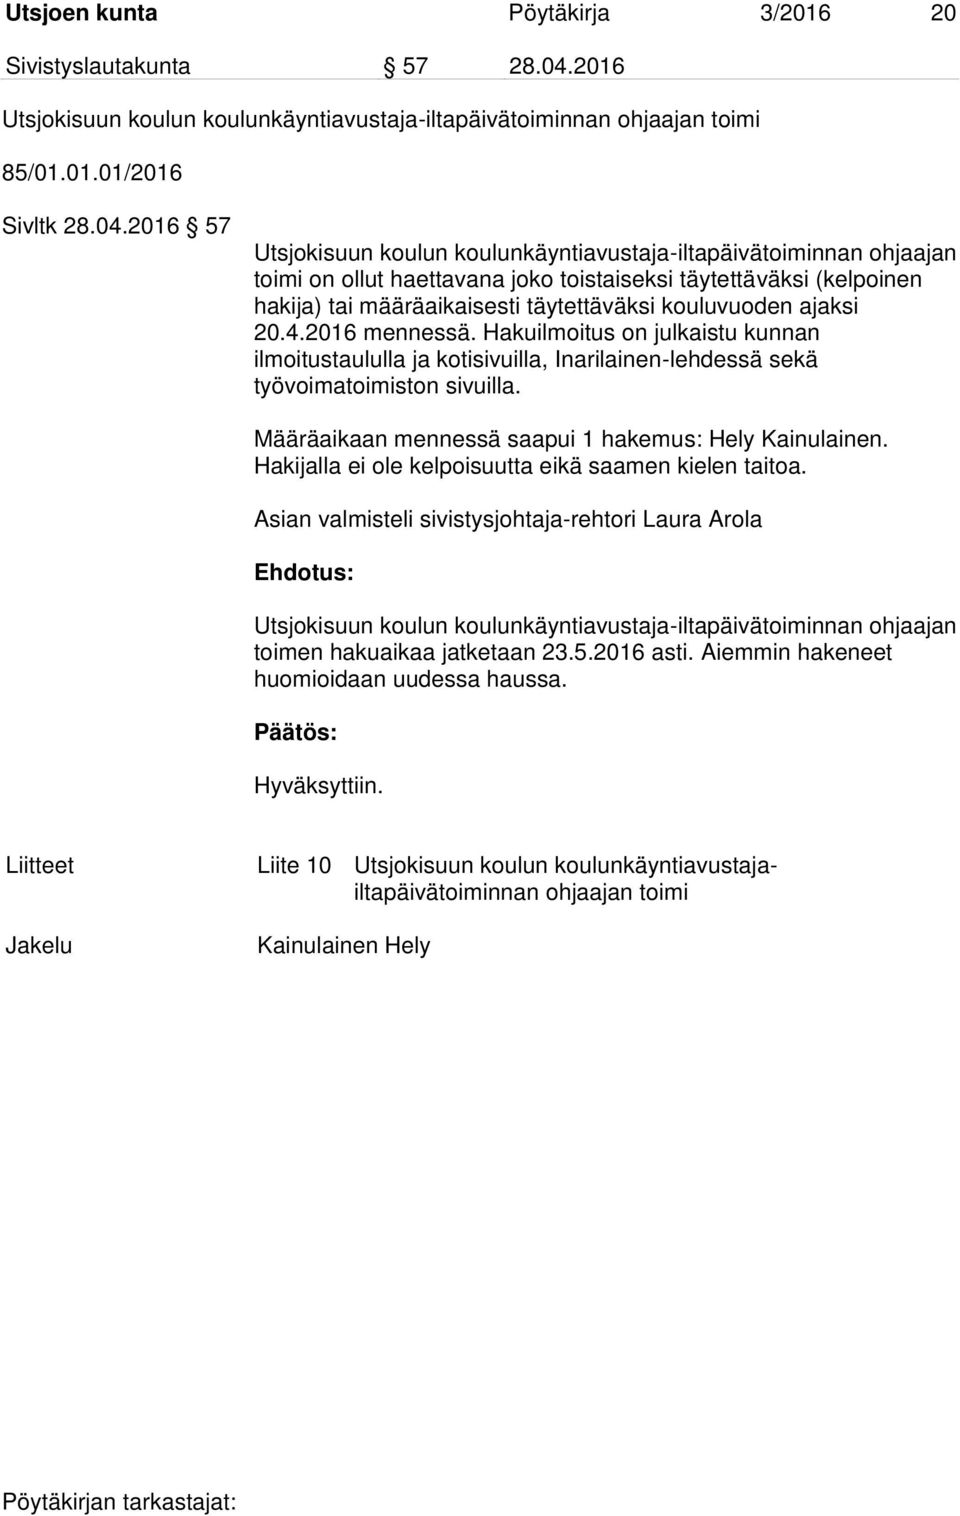 2016 57 Utsjokisuun koulun koulunkäyntiavustaja-iltapäivätoiminnan ohjaajan toimi on ollut haettavana joko toistaiseksi täytettäväksi (kelpoinen hakija) tai määräaikaisesti täytettäväksi kouluvuoden